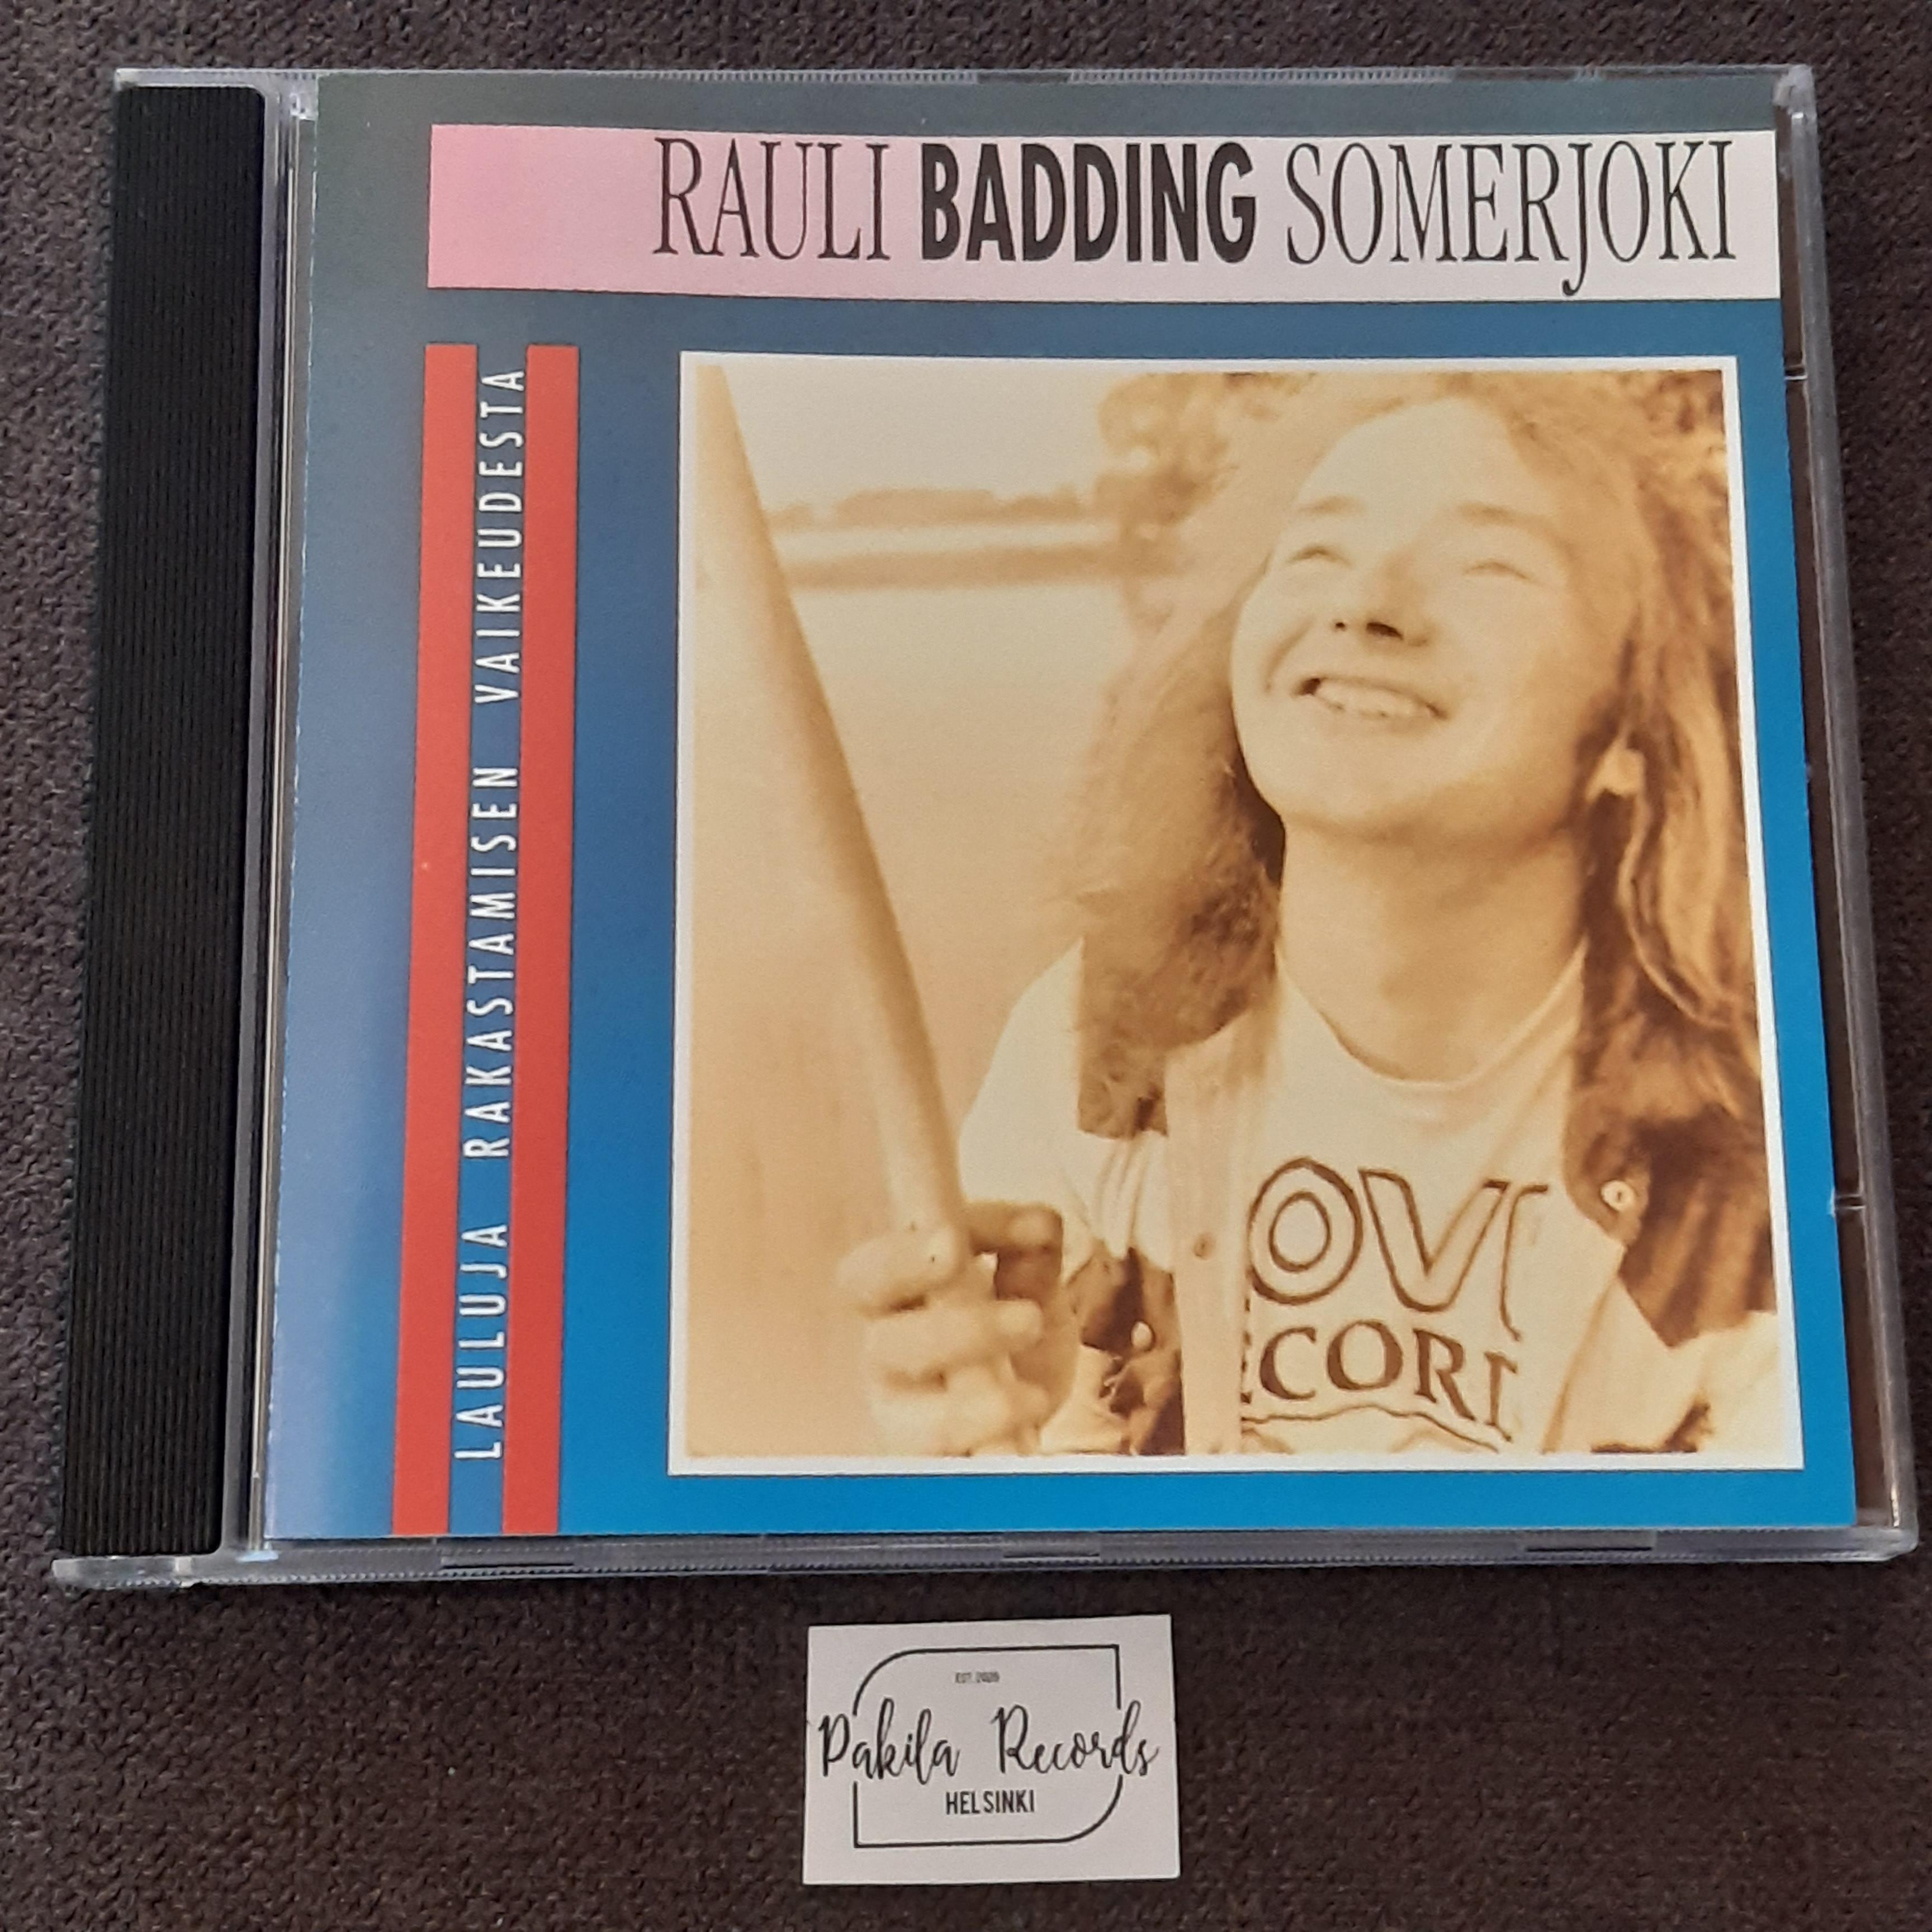 Rauli Badding Somerjoki - Laulu rakastamisen vaikeudesta - CD (käytetty)